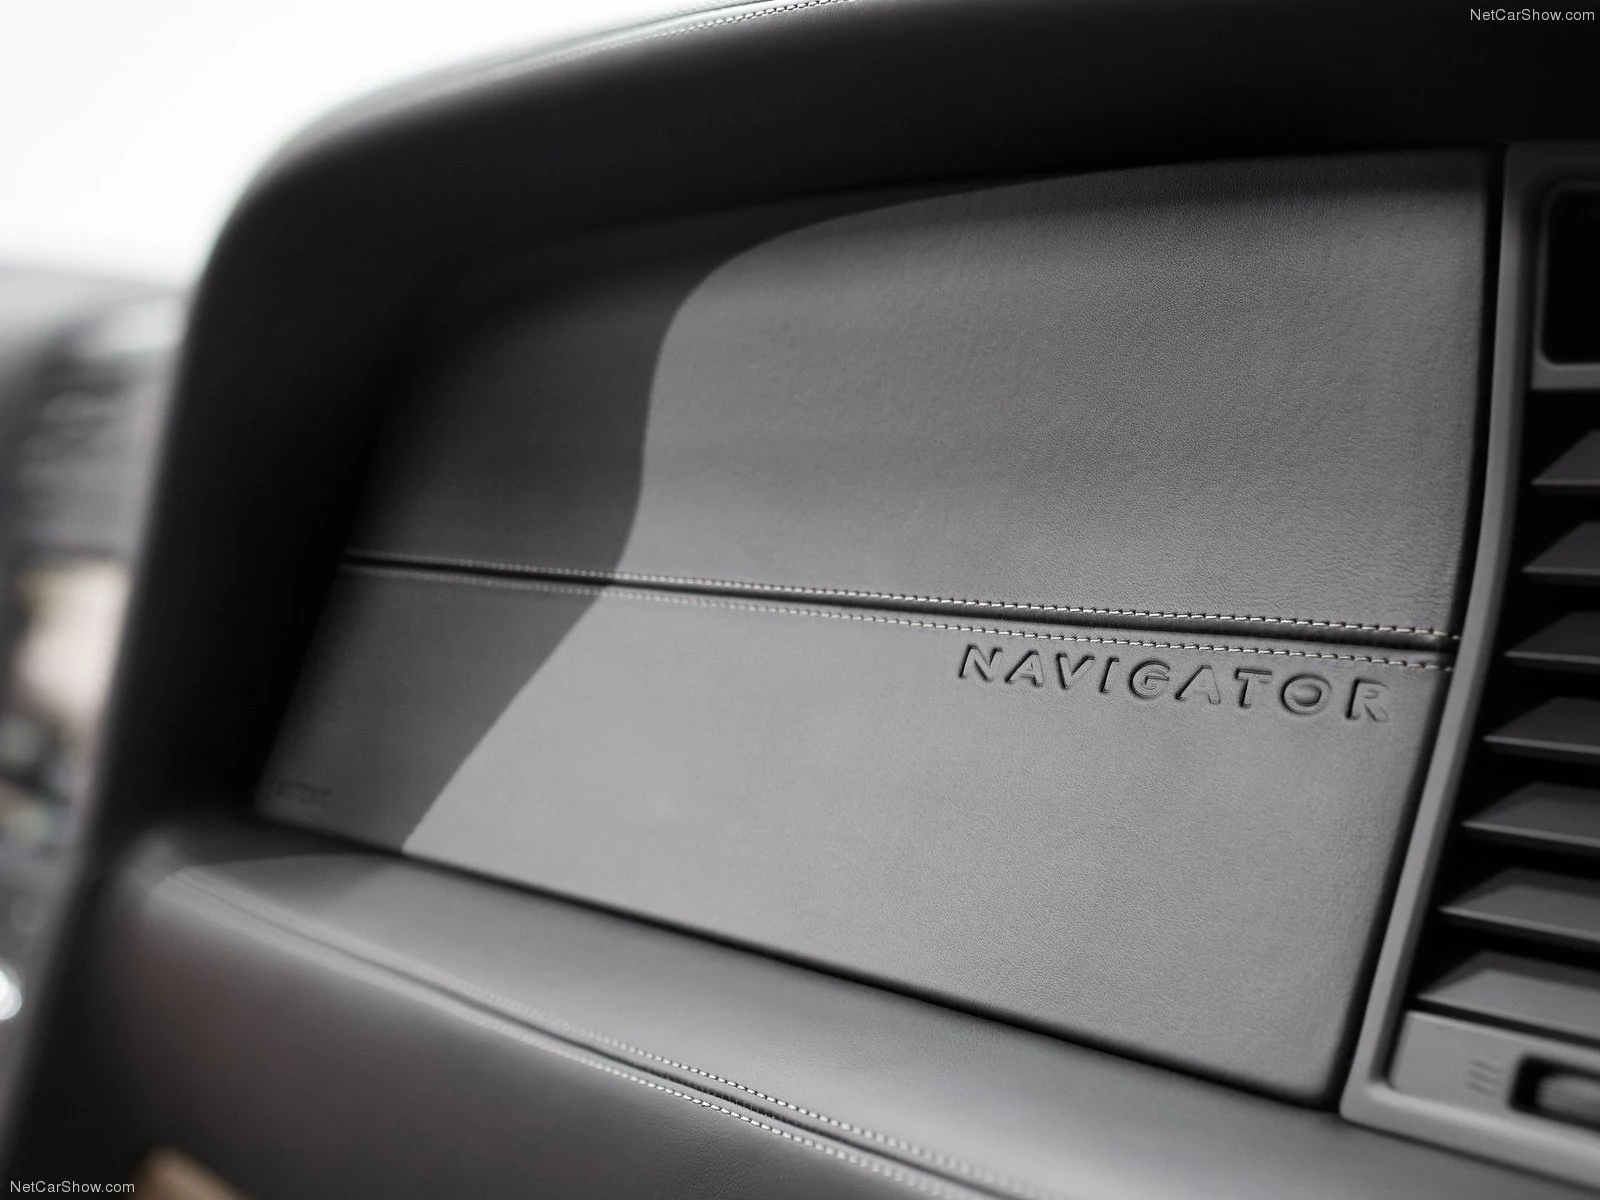 Hình ảnh xe ô tô Lincoln Navigator 2015 & nội ngoại thất